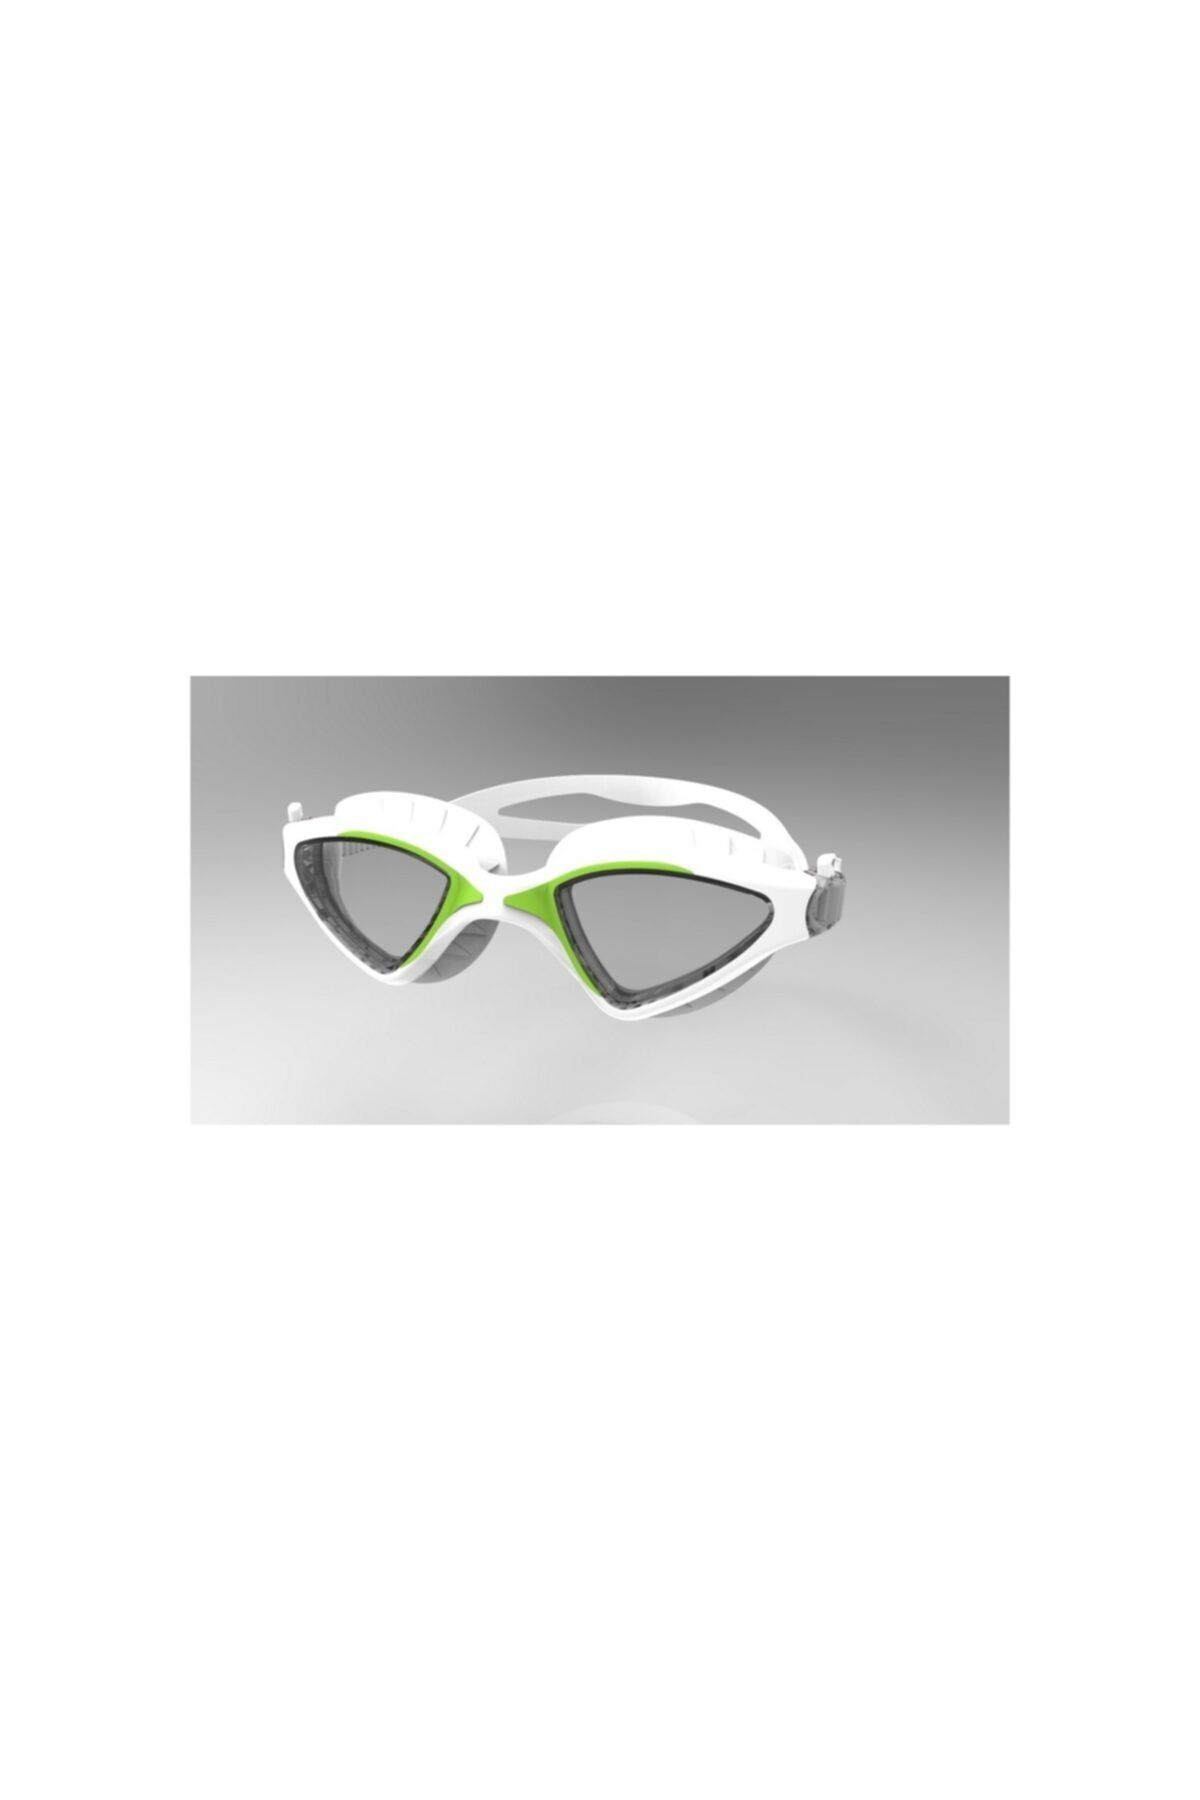 Povit Yüzücü Gözlüğü Beyaz/yeşil